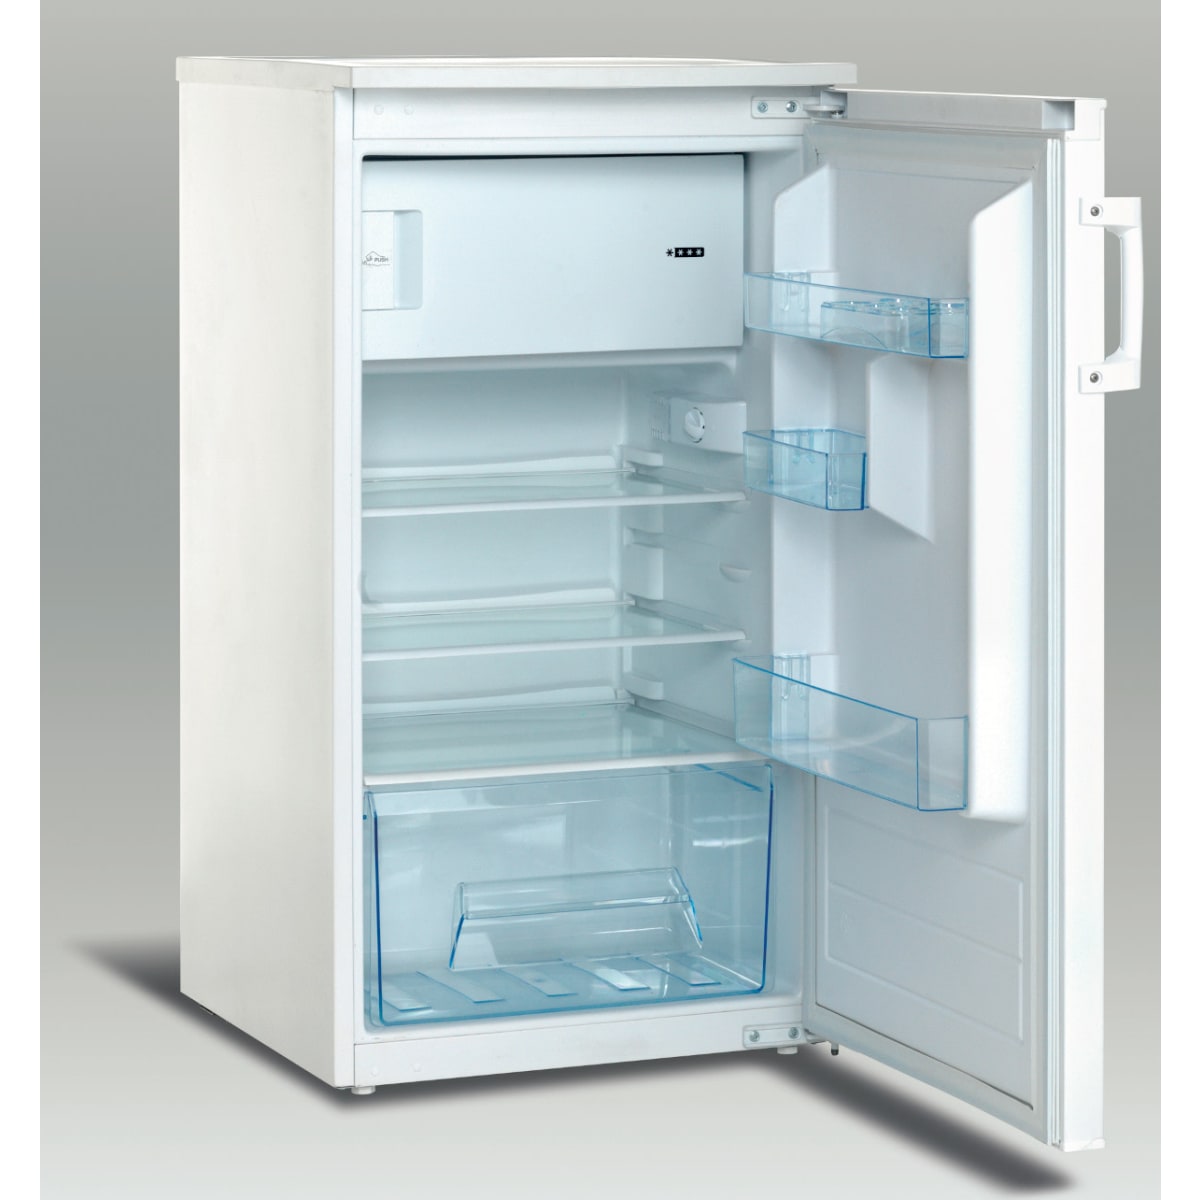 UNIT Urf-120 jääkaappi 103/55cm, pakastelokero, valkoinen, oikeakätinen |  Karkkainen.com verkkokauppa